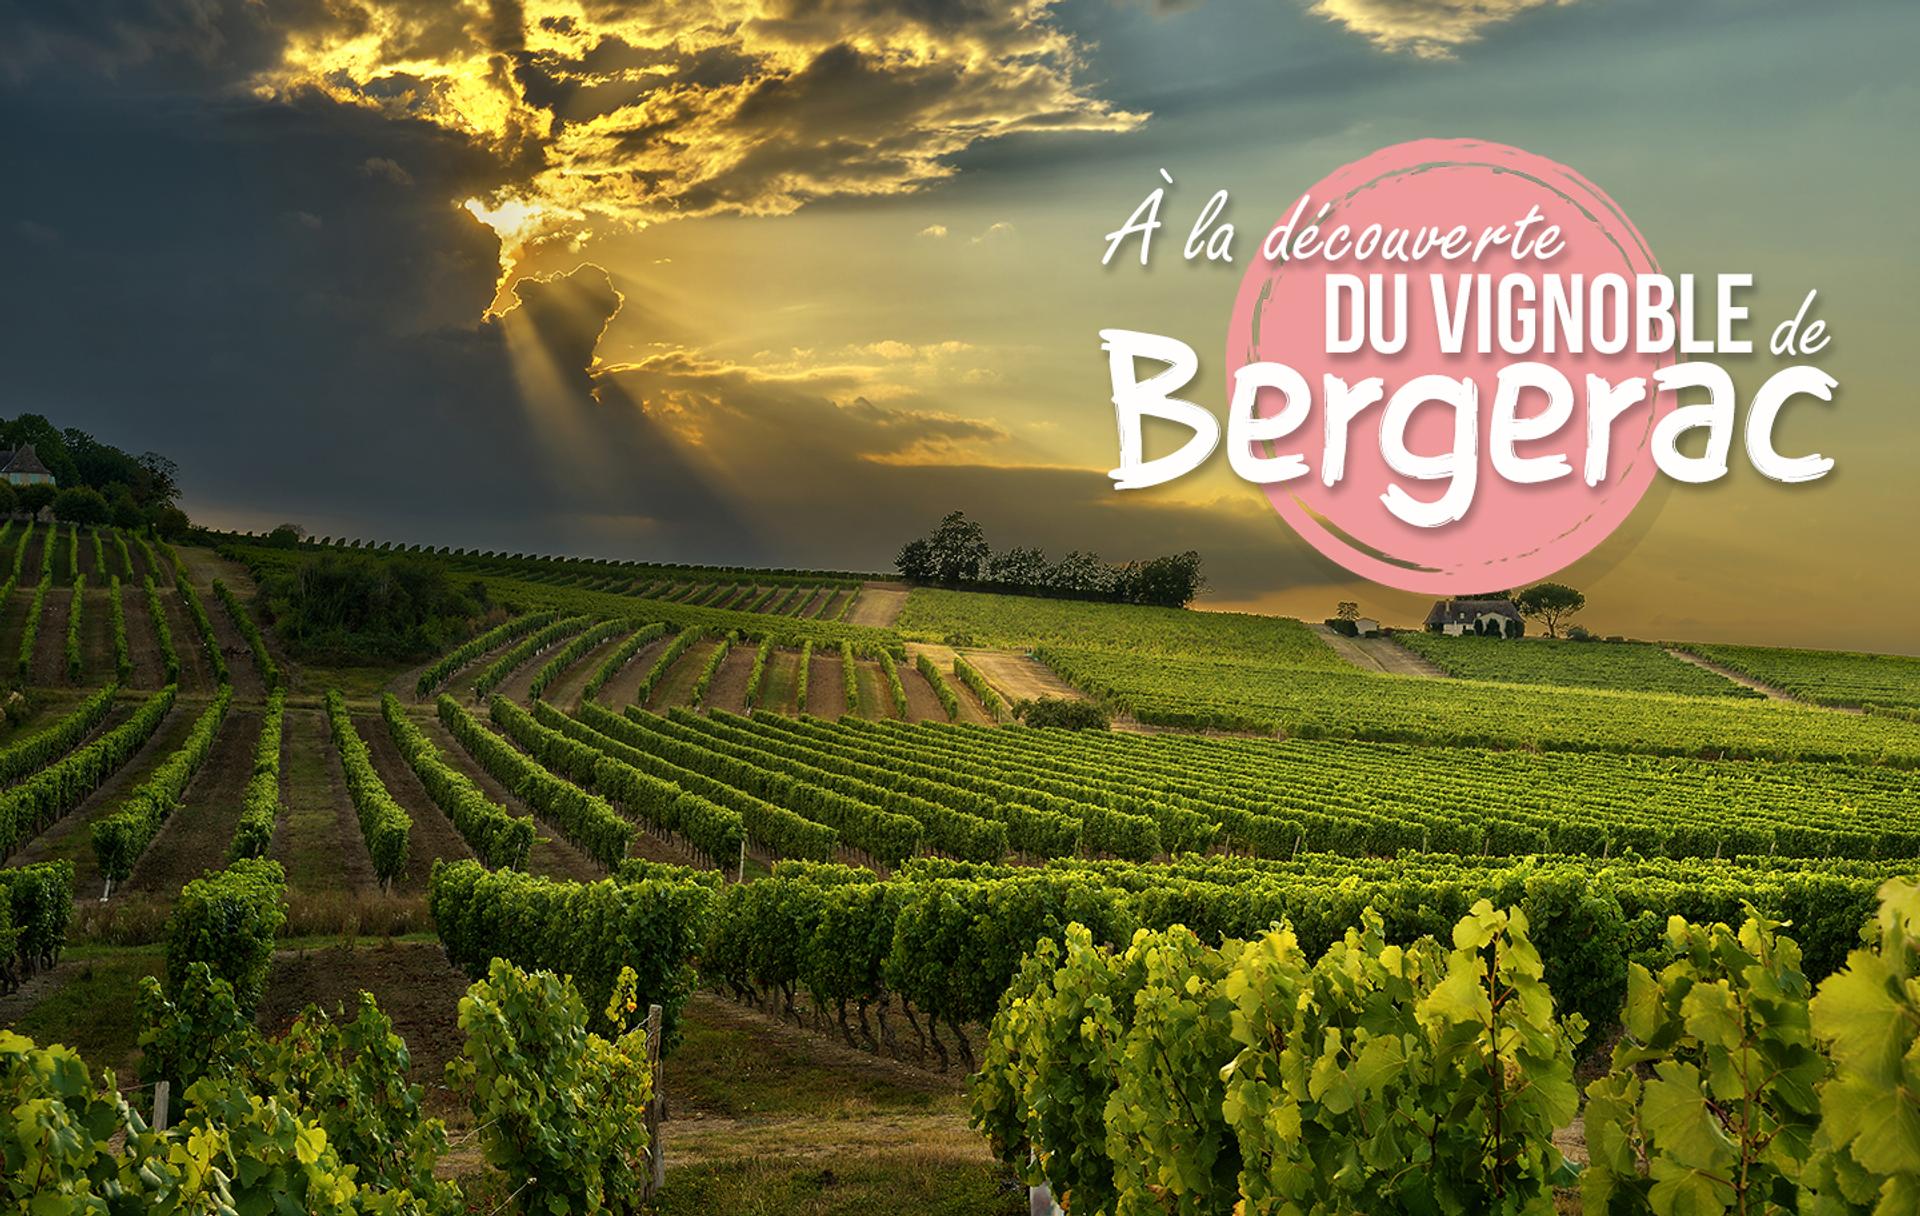 A la découverte du vignoble de Bergerac